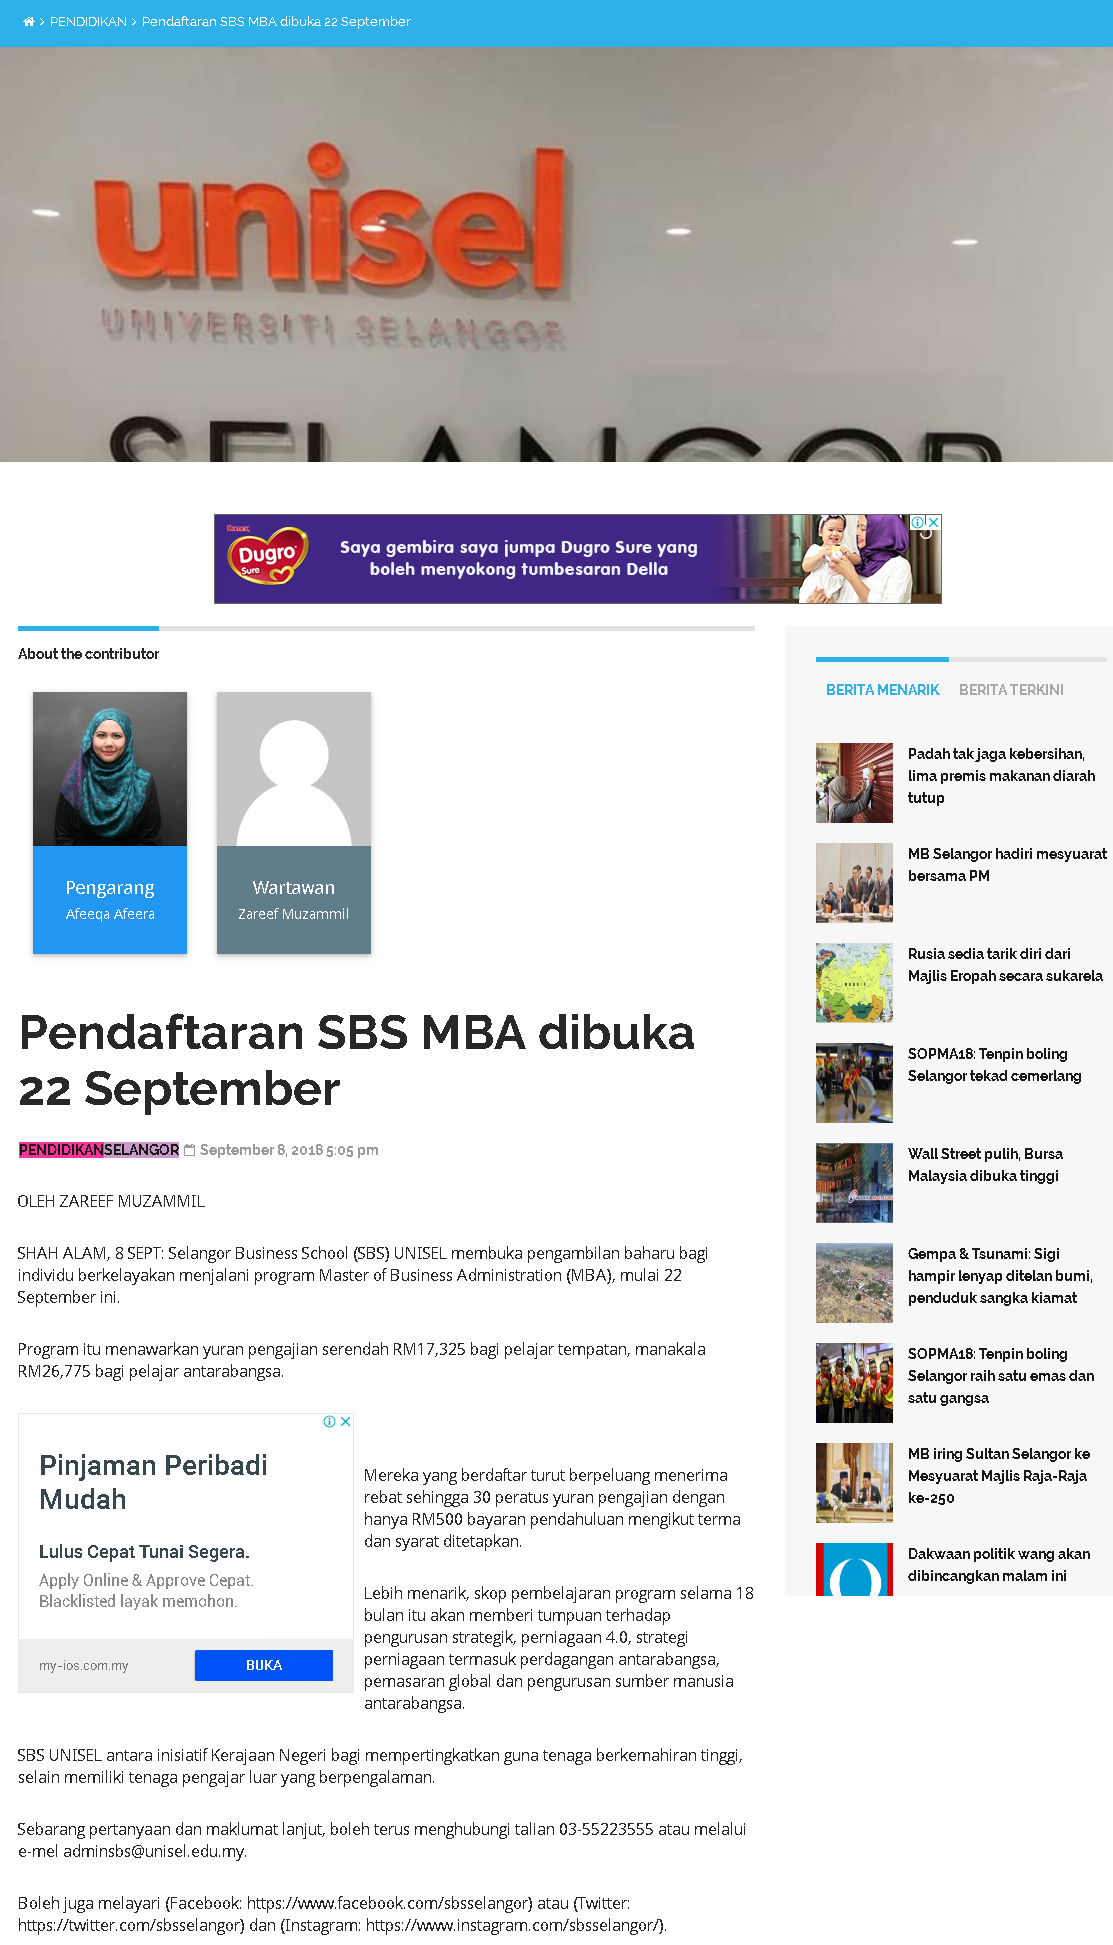 Selangor Kini Online - 8 September 2018